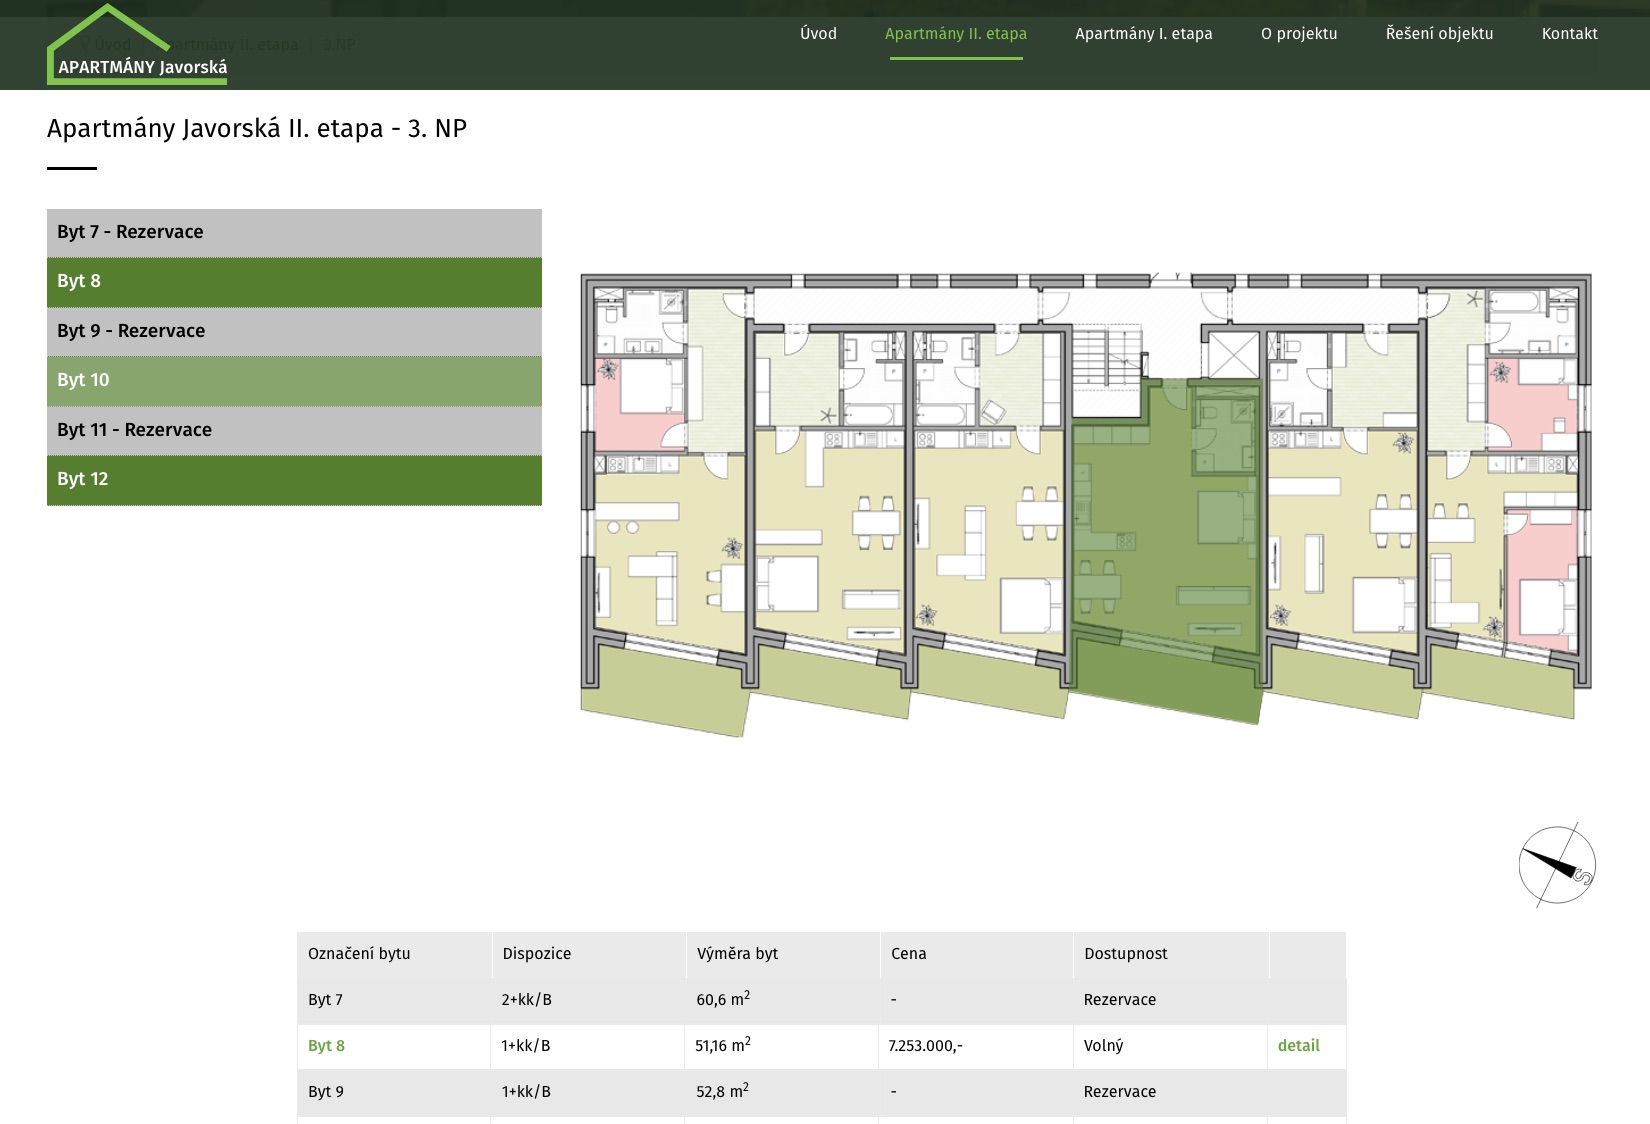 apartmany developer mapa bytu - rozlozeni - interaktivni vyber - webový system